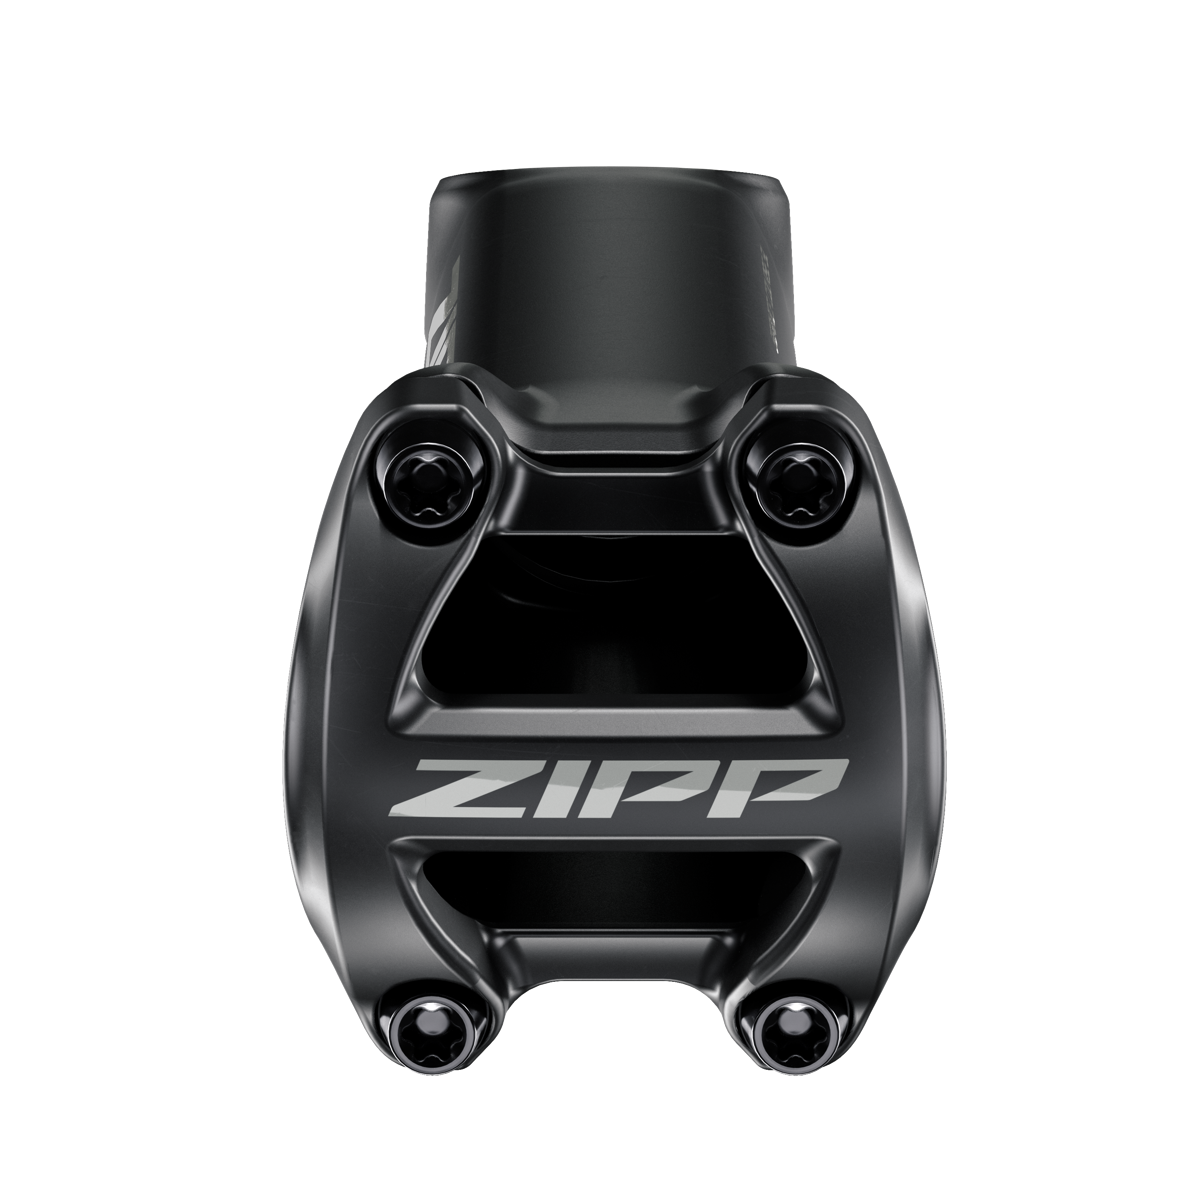 速连推出新款ZIPP把组系列及全新集成式支架